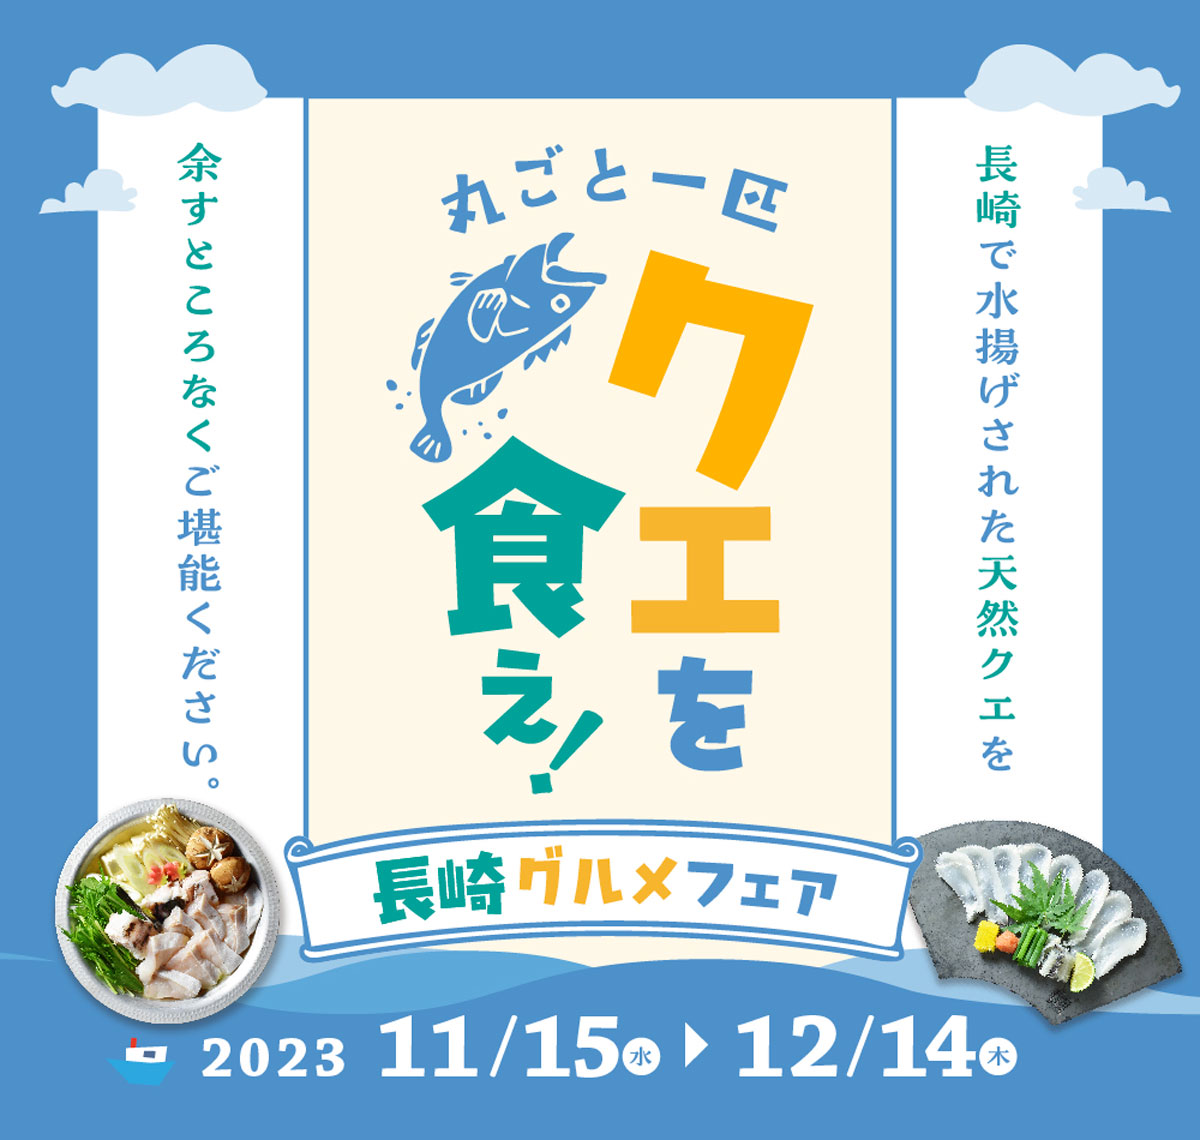 株式会社ワールド・ワンが「丸ごと一匹クエを食え！長崎グルメフェア」を開催中　神戸市 [画像]